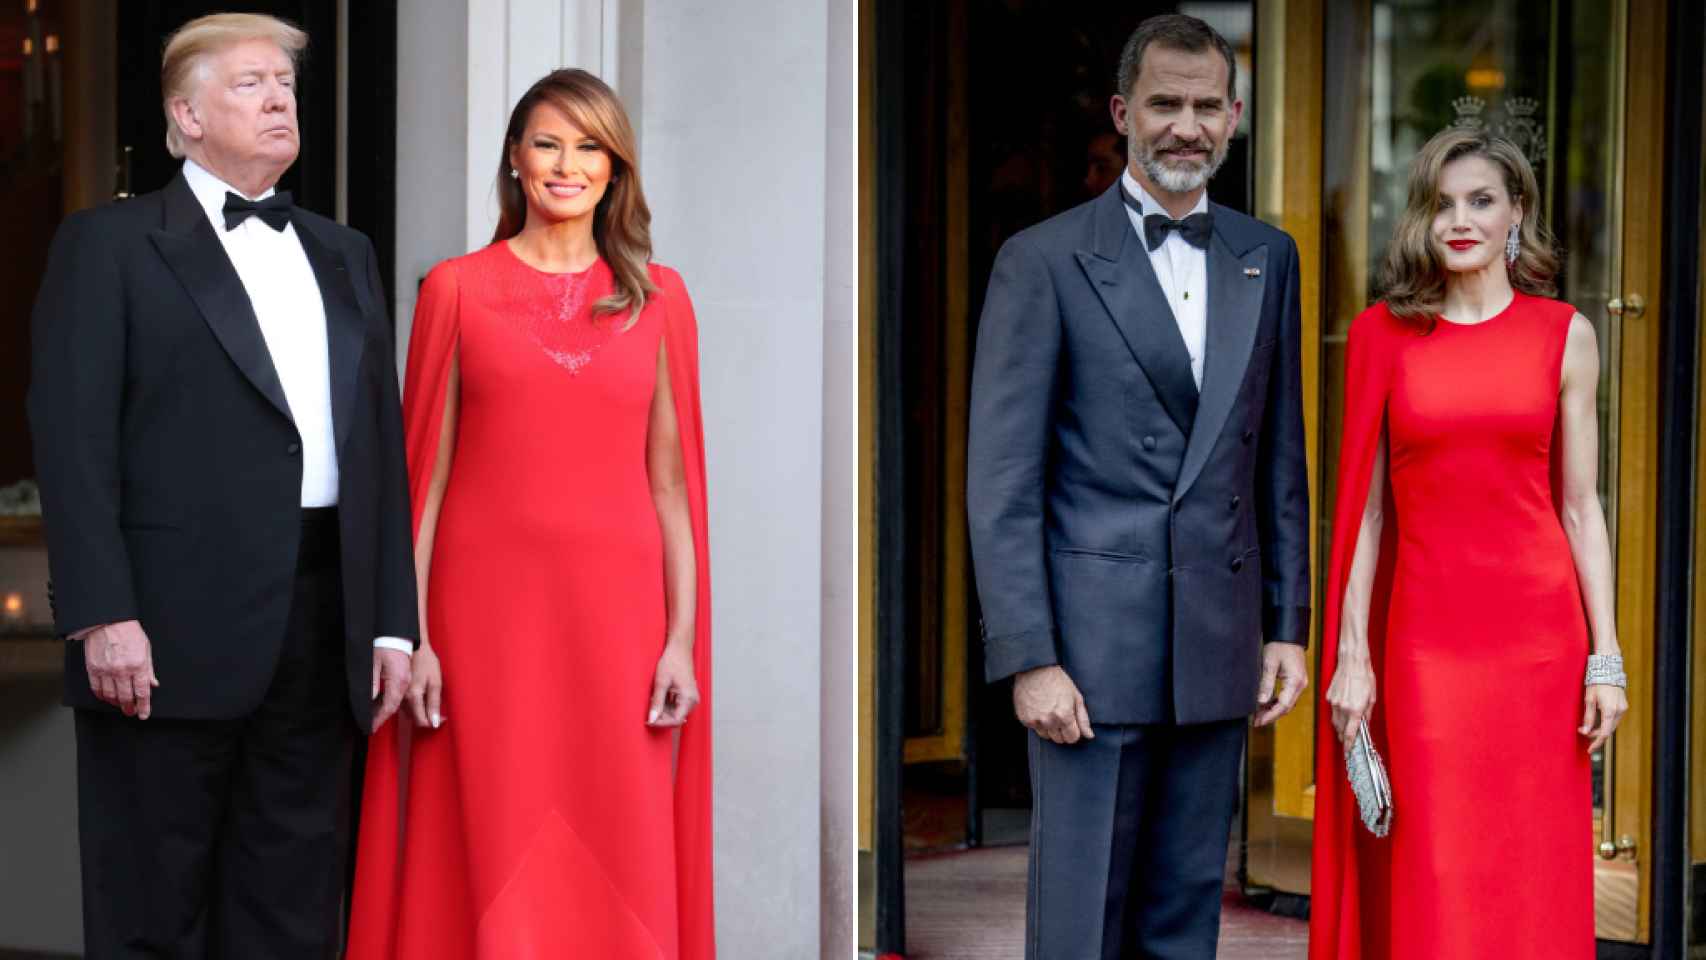 En 2019, Melania lució un vestido similar al que llevó la Reina en 2017 al cumpleaños de Guillermo de Holanda.